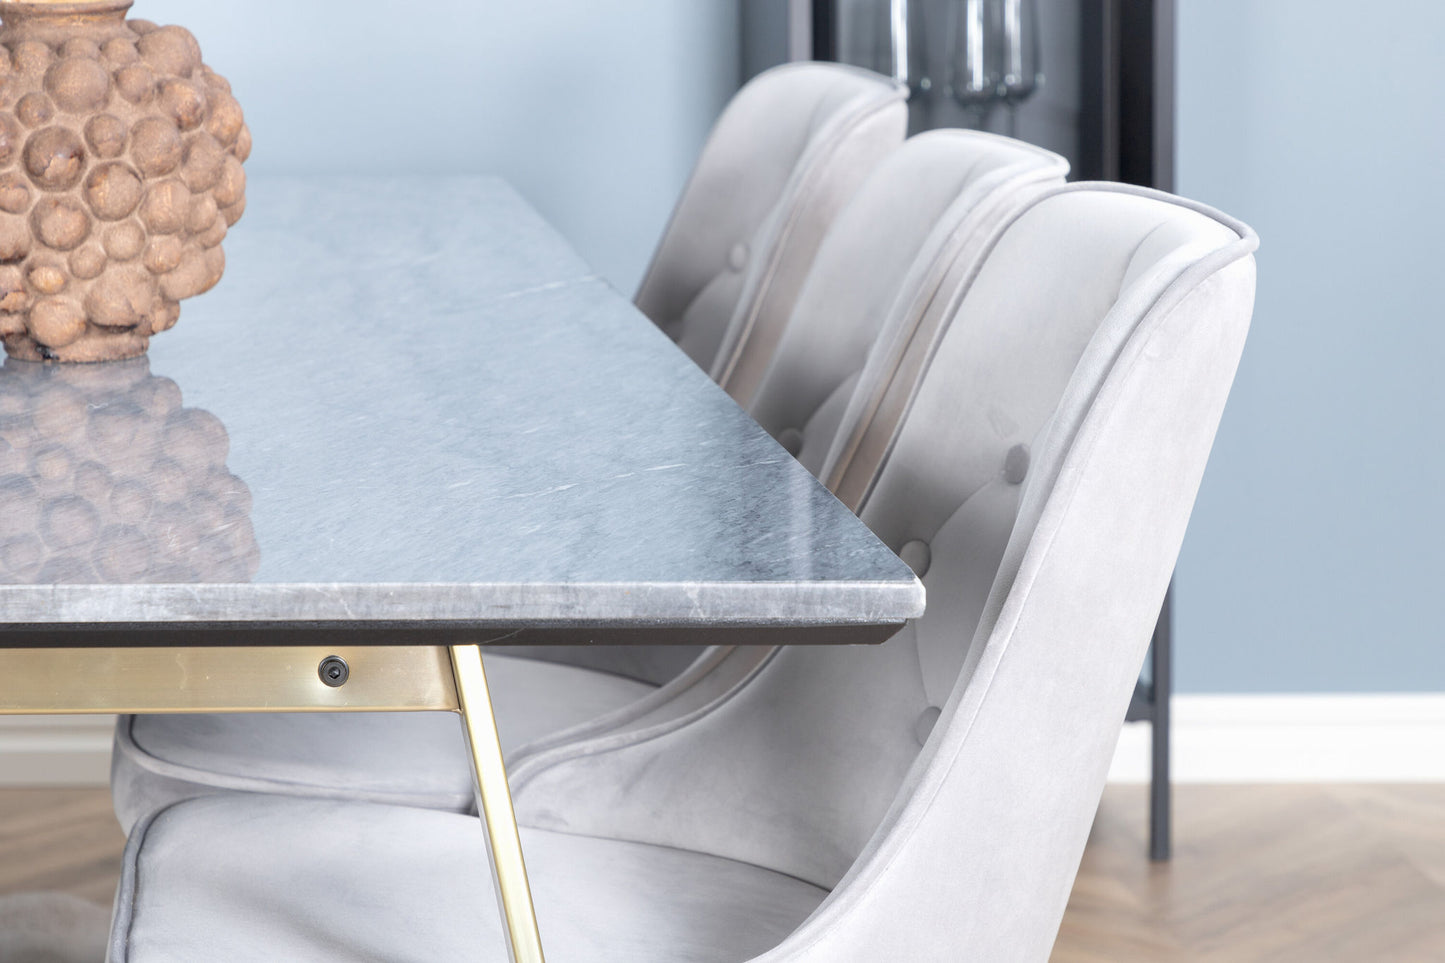 Estelle - Spisebord, 200*90 Grå Marmor / Mat Messing ben - velour Deluxe Spisebordsstol - Ben af børstet messig / Lysegrå velour